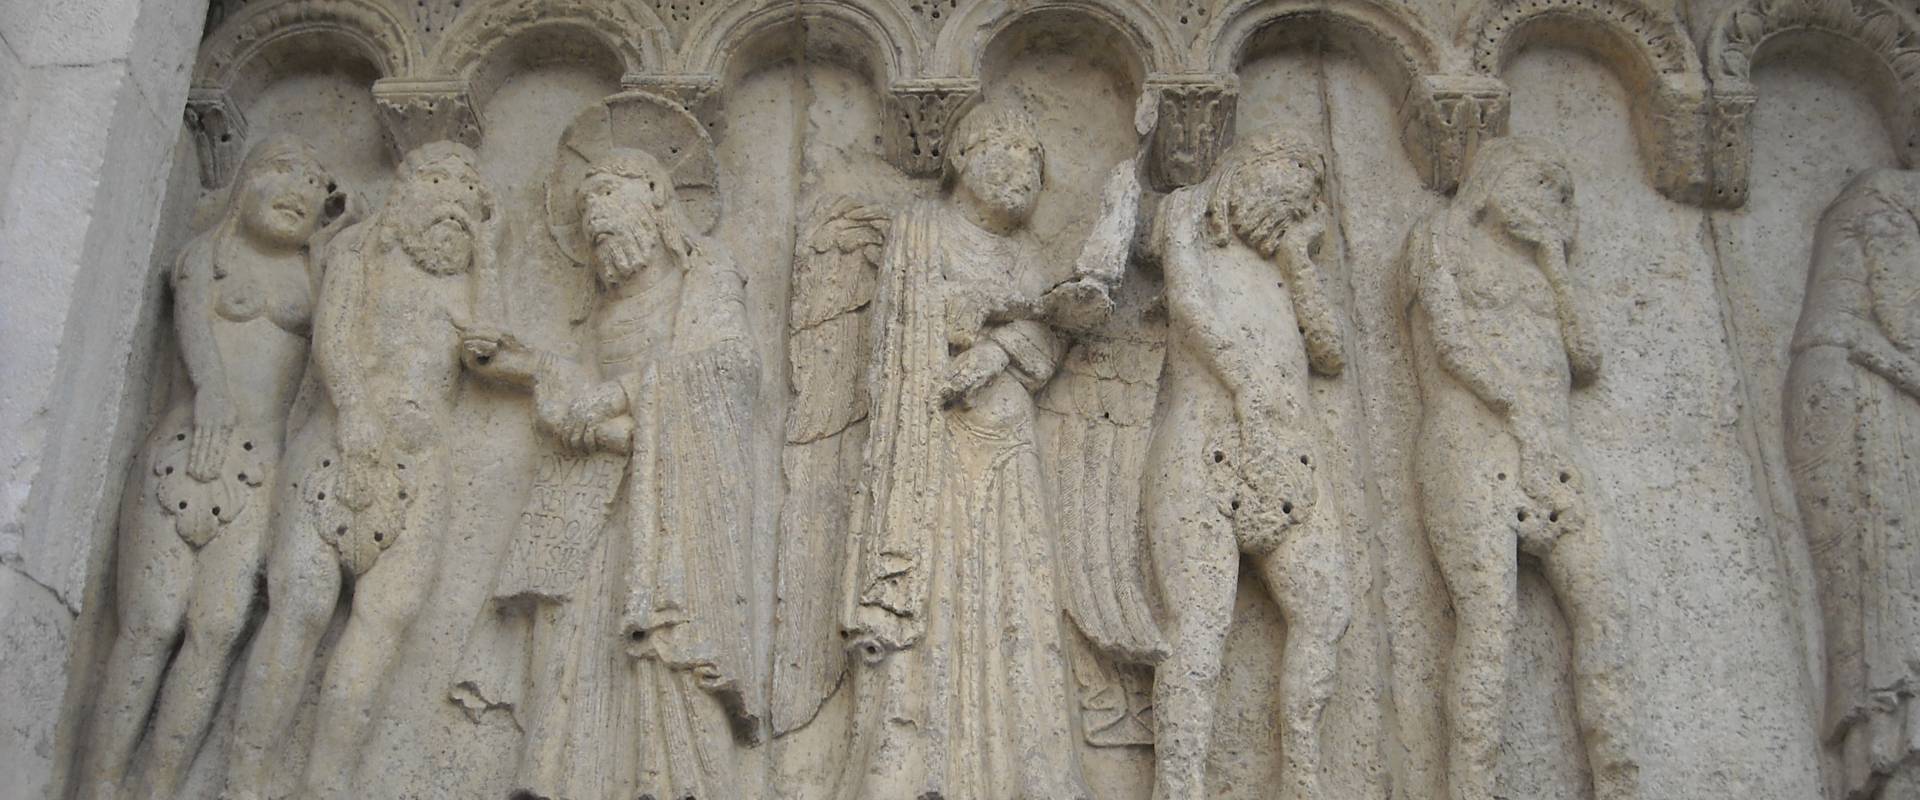 Duomo di Modena, pannello scultoreo di facciata foto di Giuch86